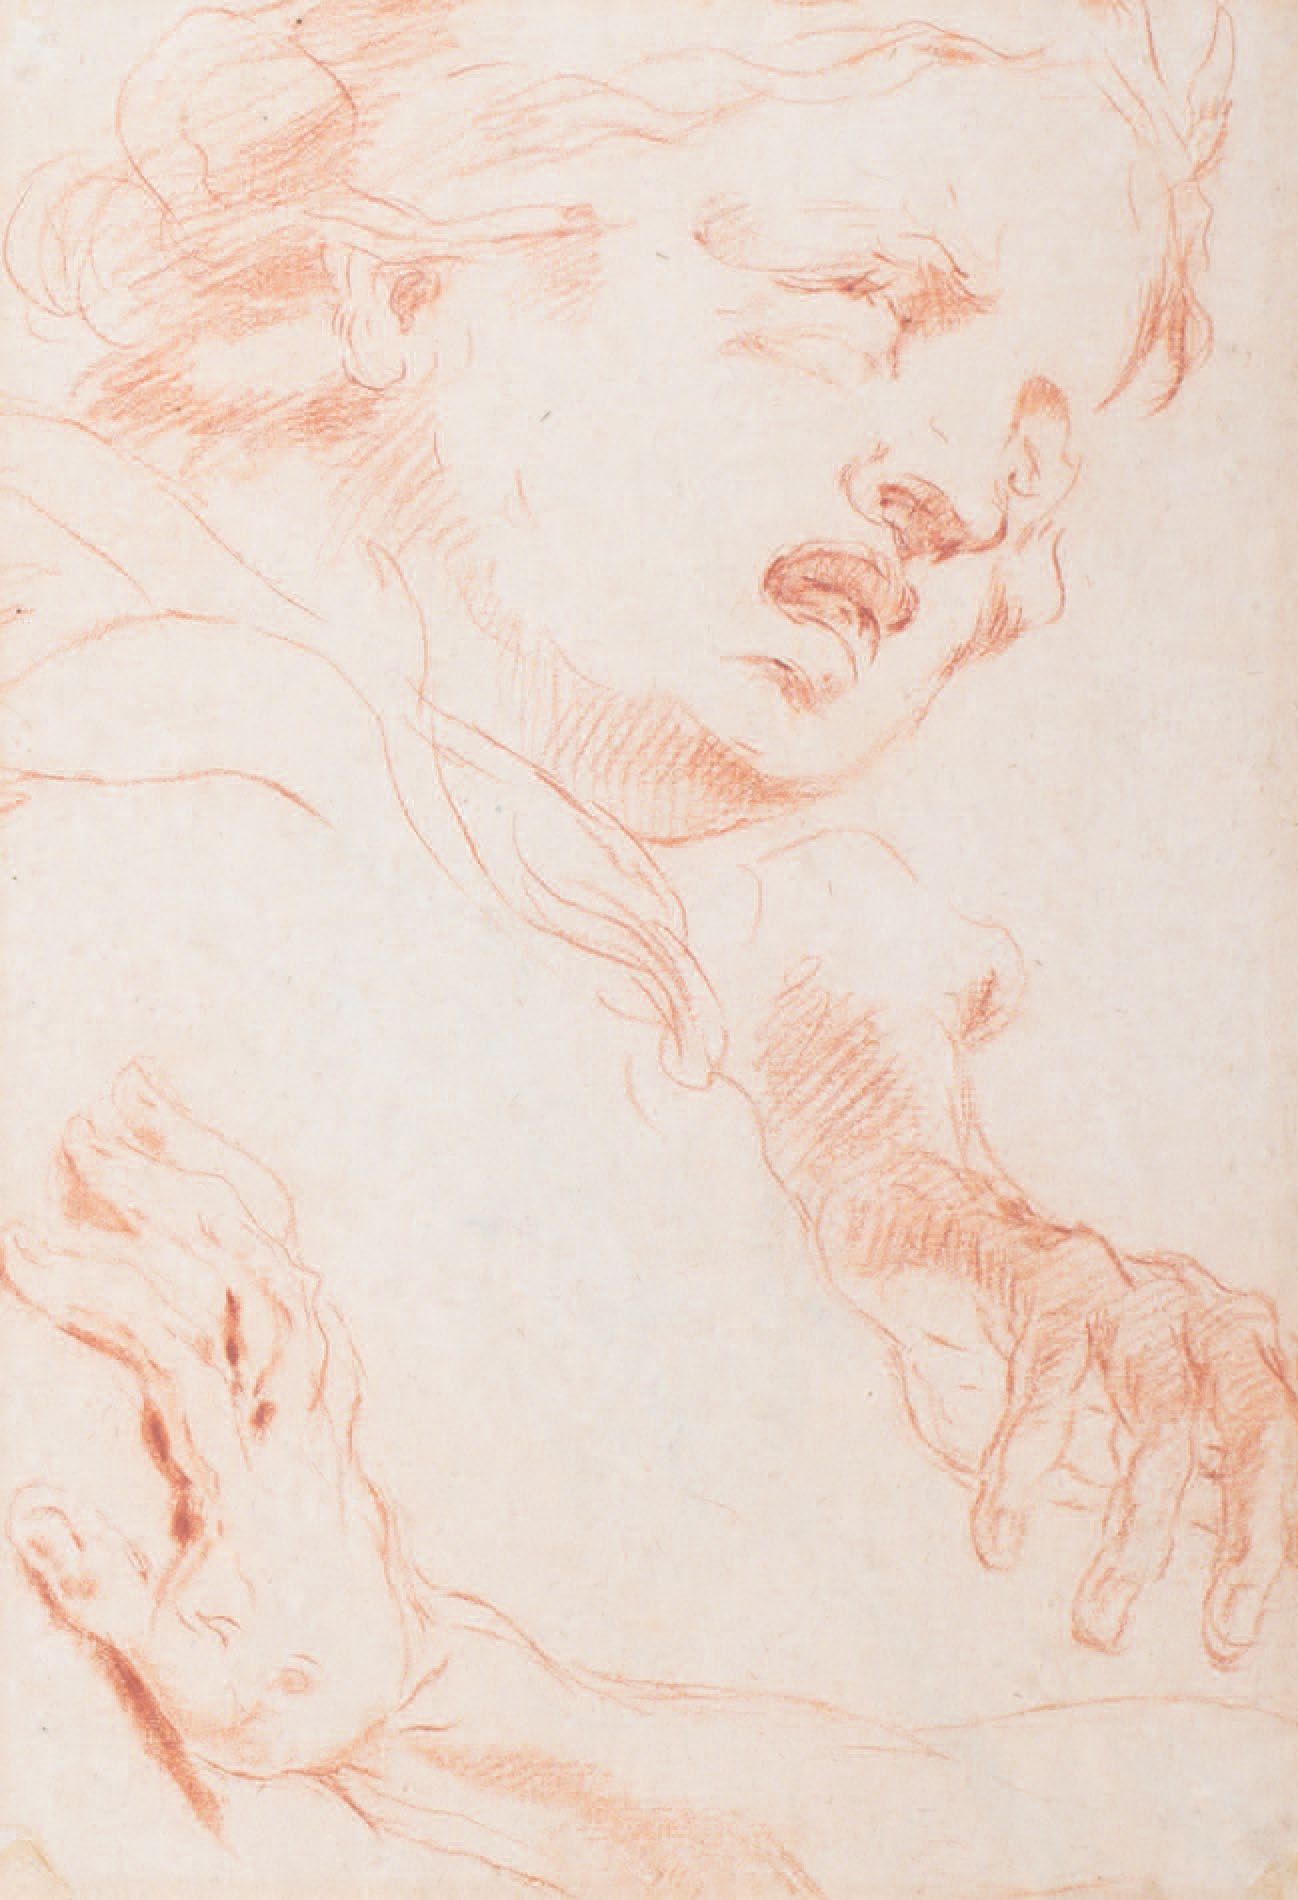 Pietro Antonio NOVELLI (1729-1804) 
头部和手部的研究
Sanguine
Étude de tête et de main
S&hellip;